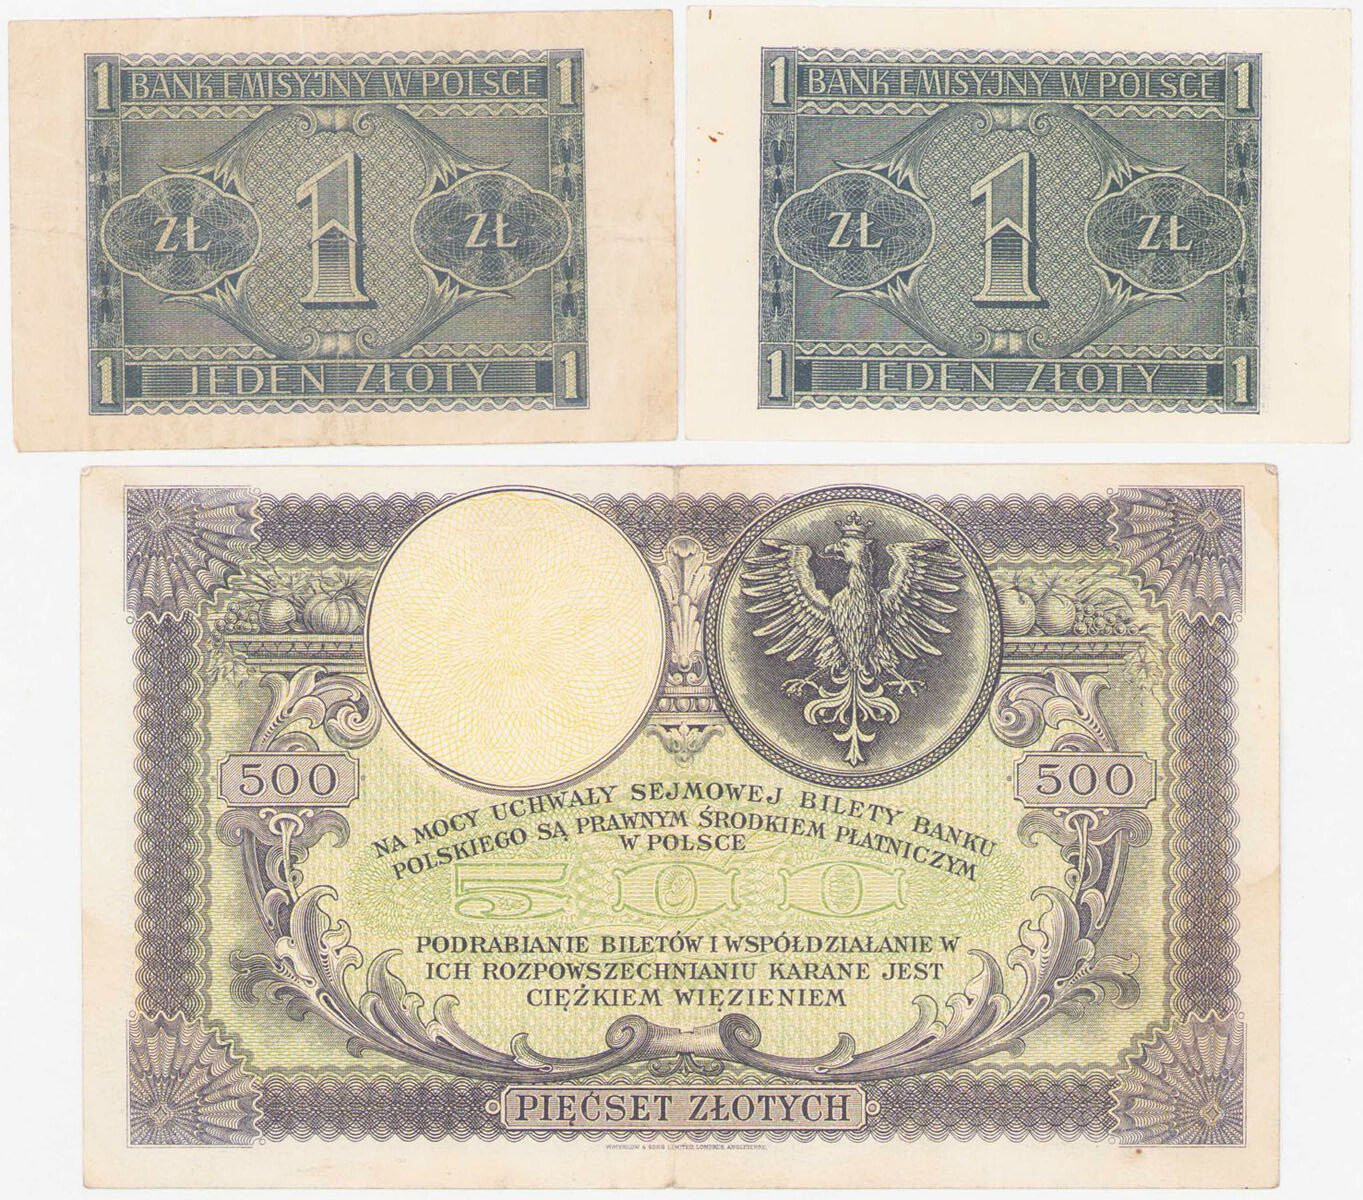 1 złoty 1941 i 500 złotych 1919, zestaw 3 banknotów